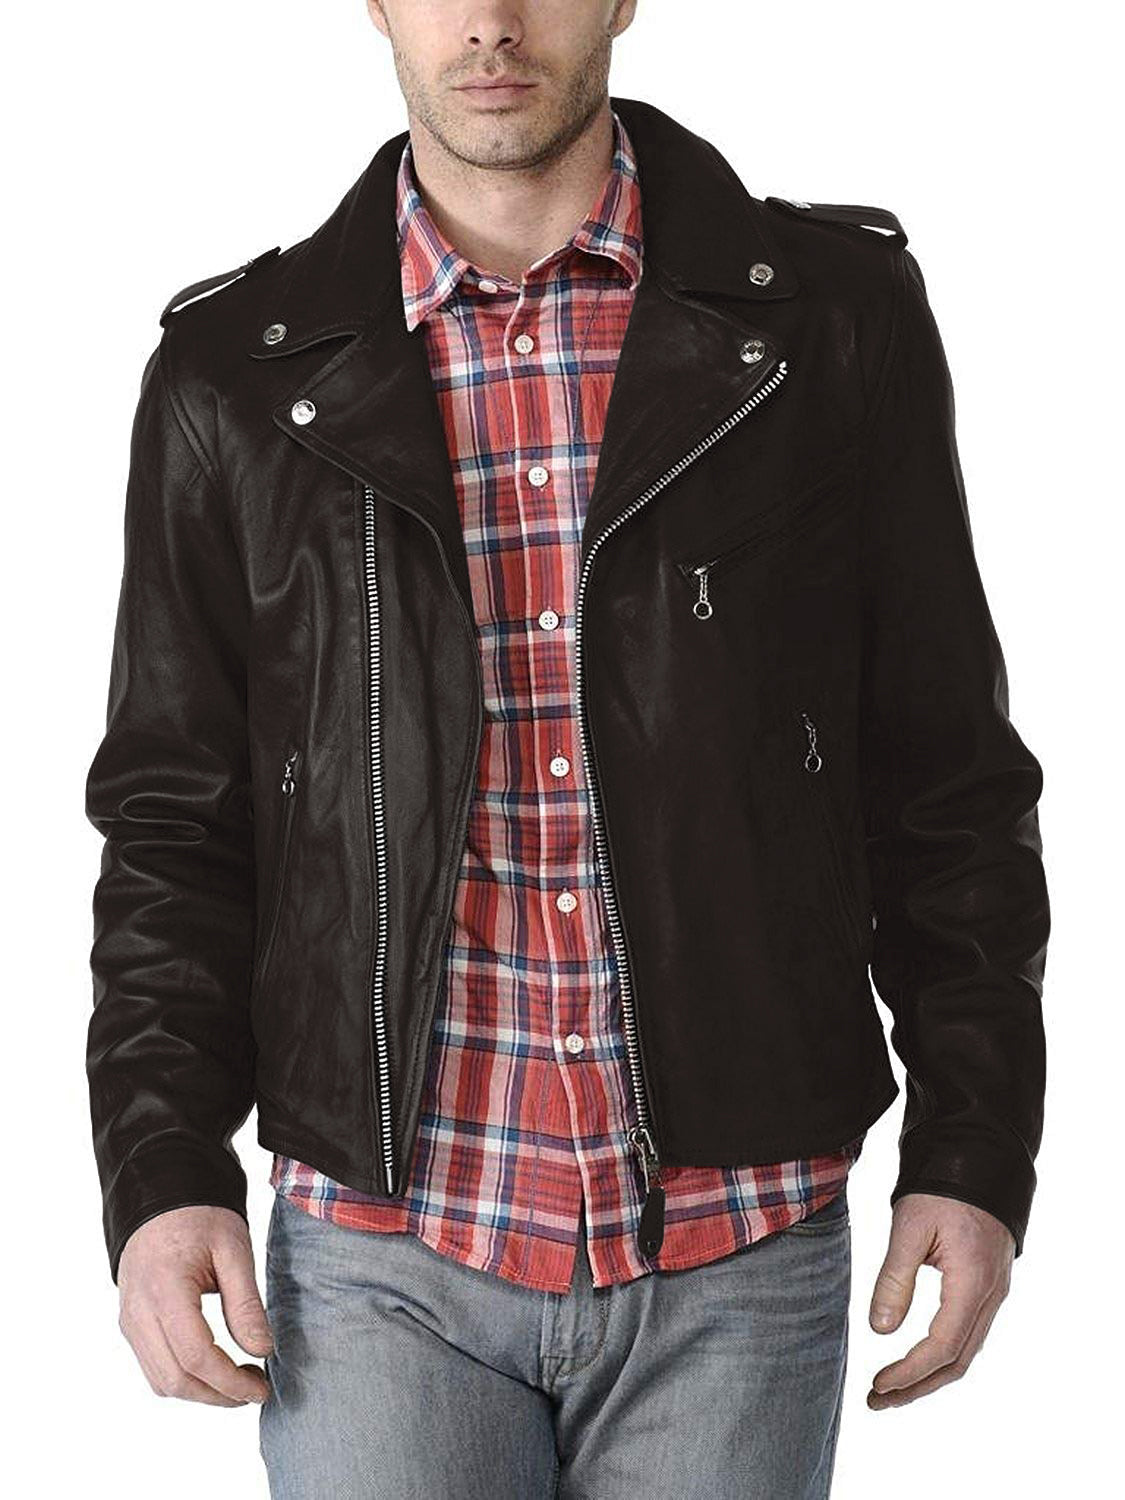 Leather Jackets Hub Mens Genuine Lambskin Leather Jacket (Black, Double Rider Jacket) - 1501190